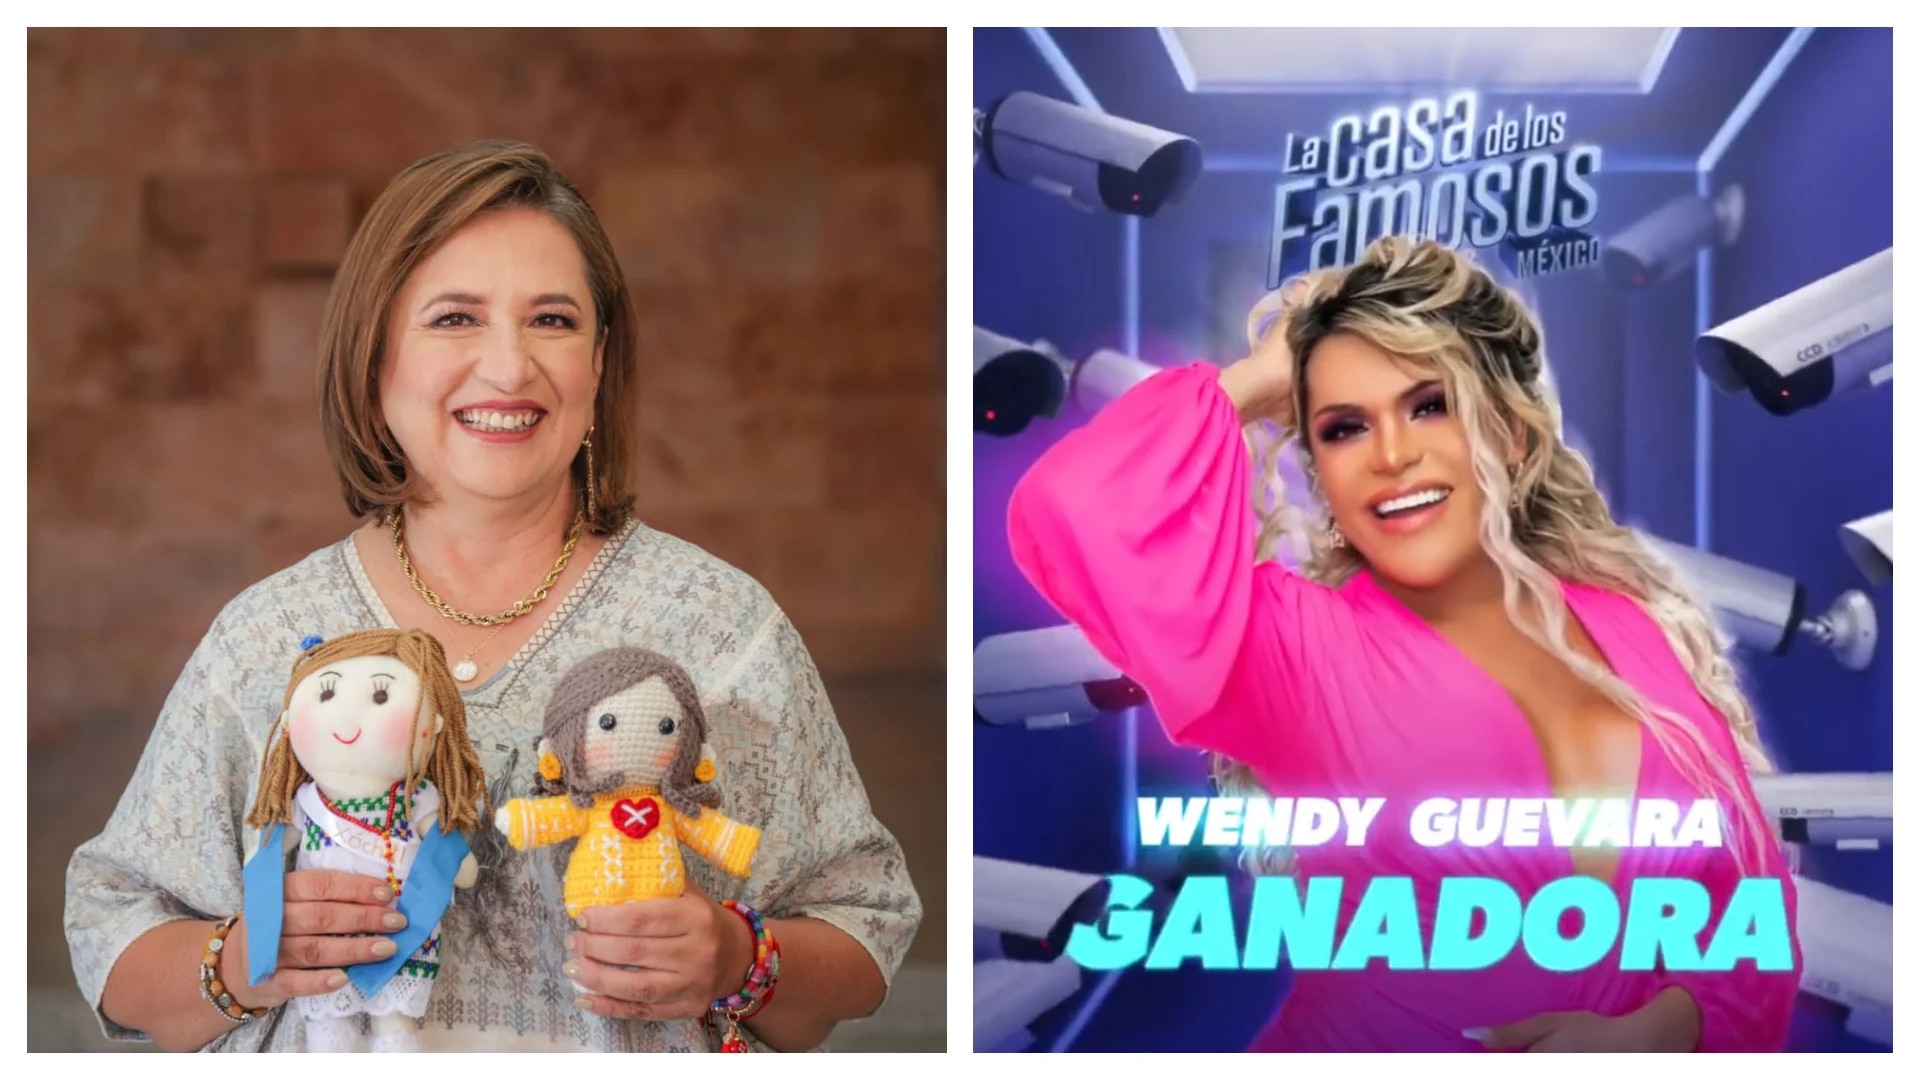 Xóchitl Gálvez congratulates Wendy Guevara for winning La Casa de Los Famosos México (@LaCasaFamososMx / @XochitlGalvez)